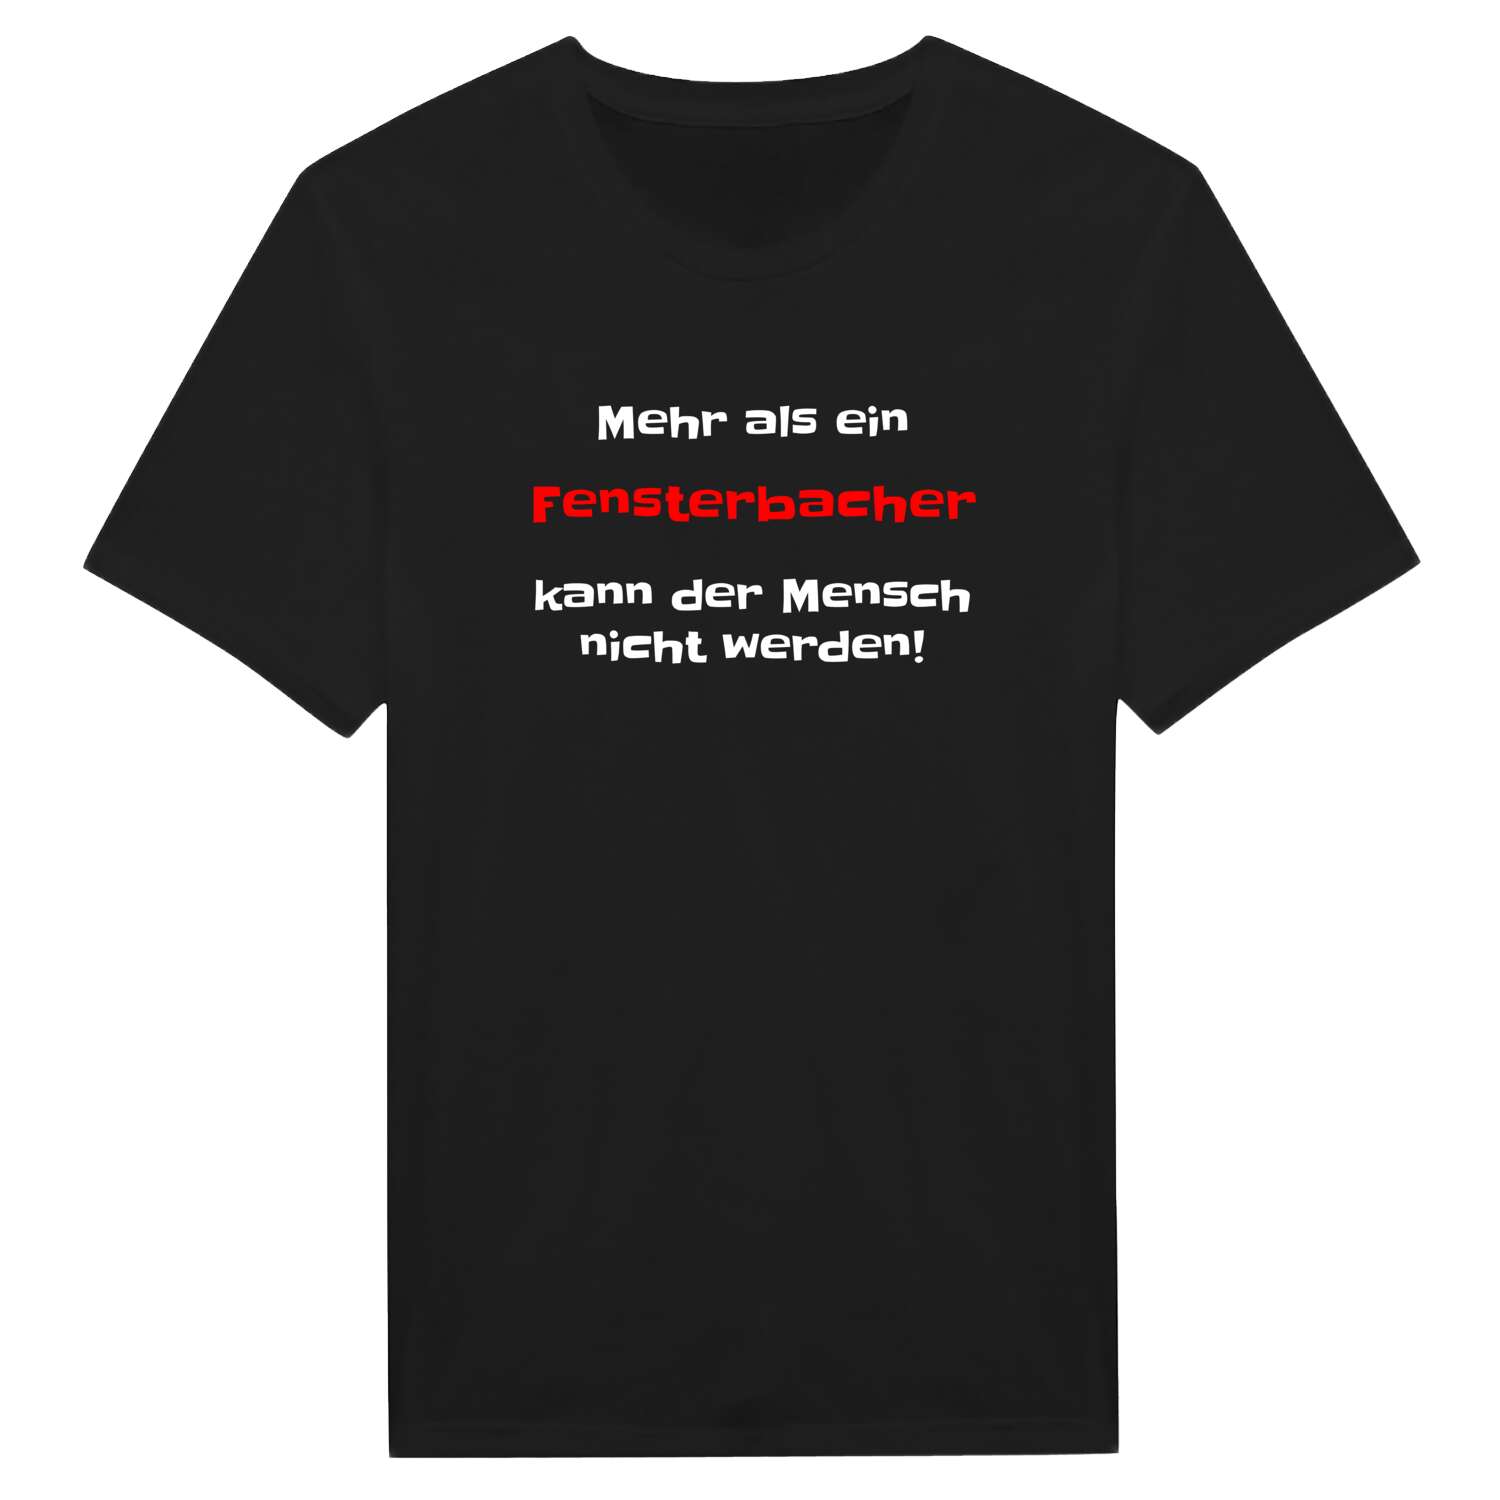 Fensterbach T-Shirt »Mehr als ein«